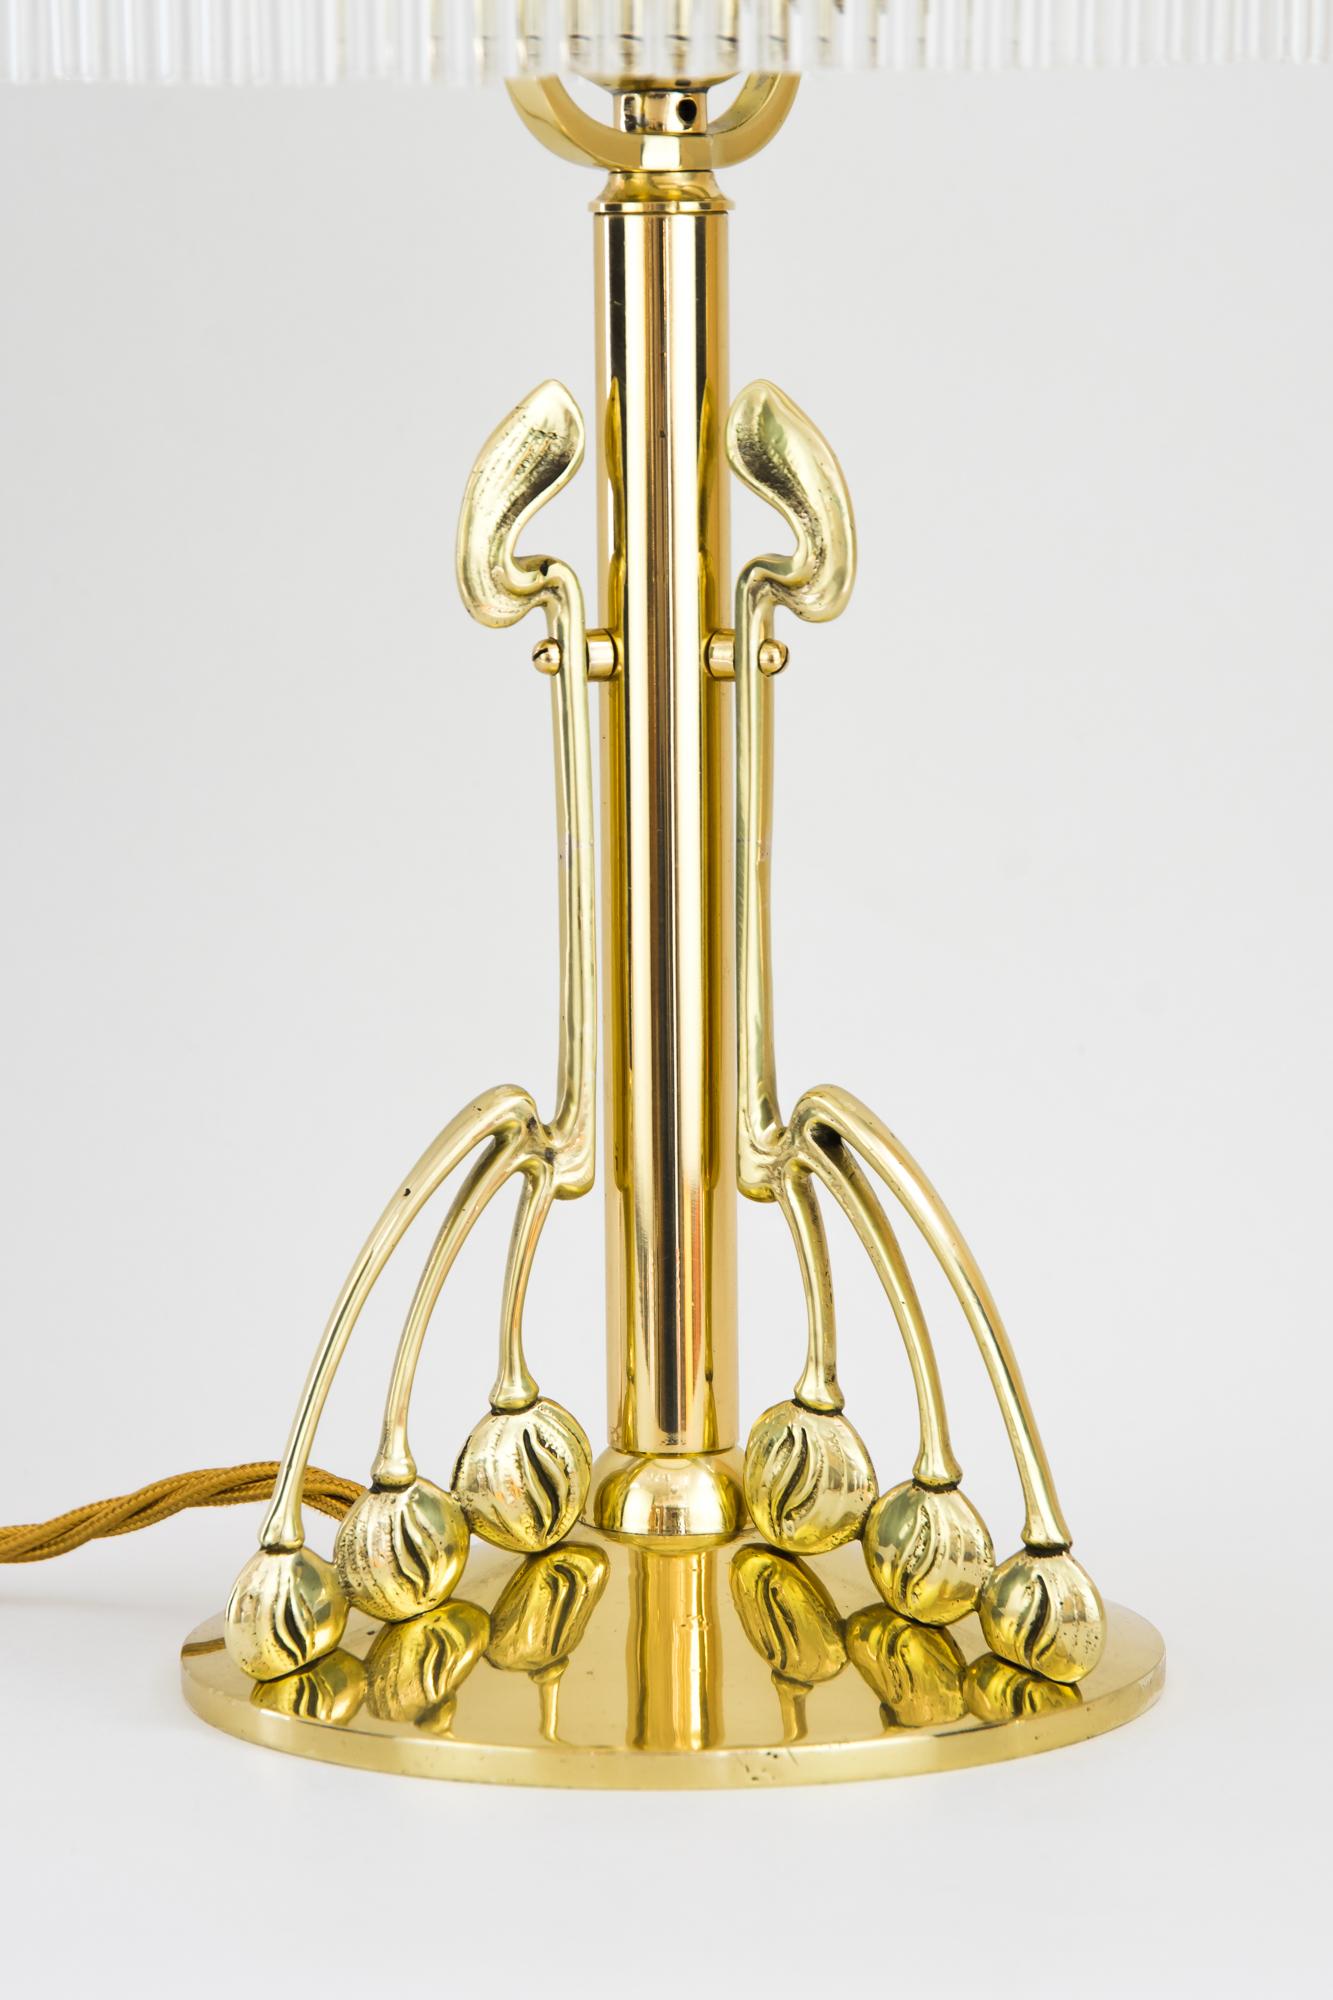 Lacquered Jugendstil Table Lamp with Original 